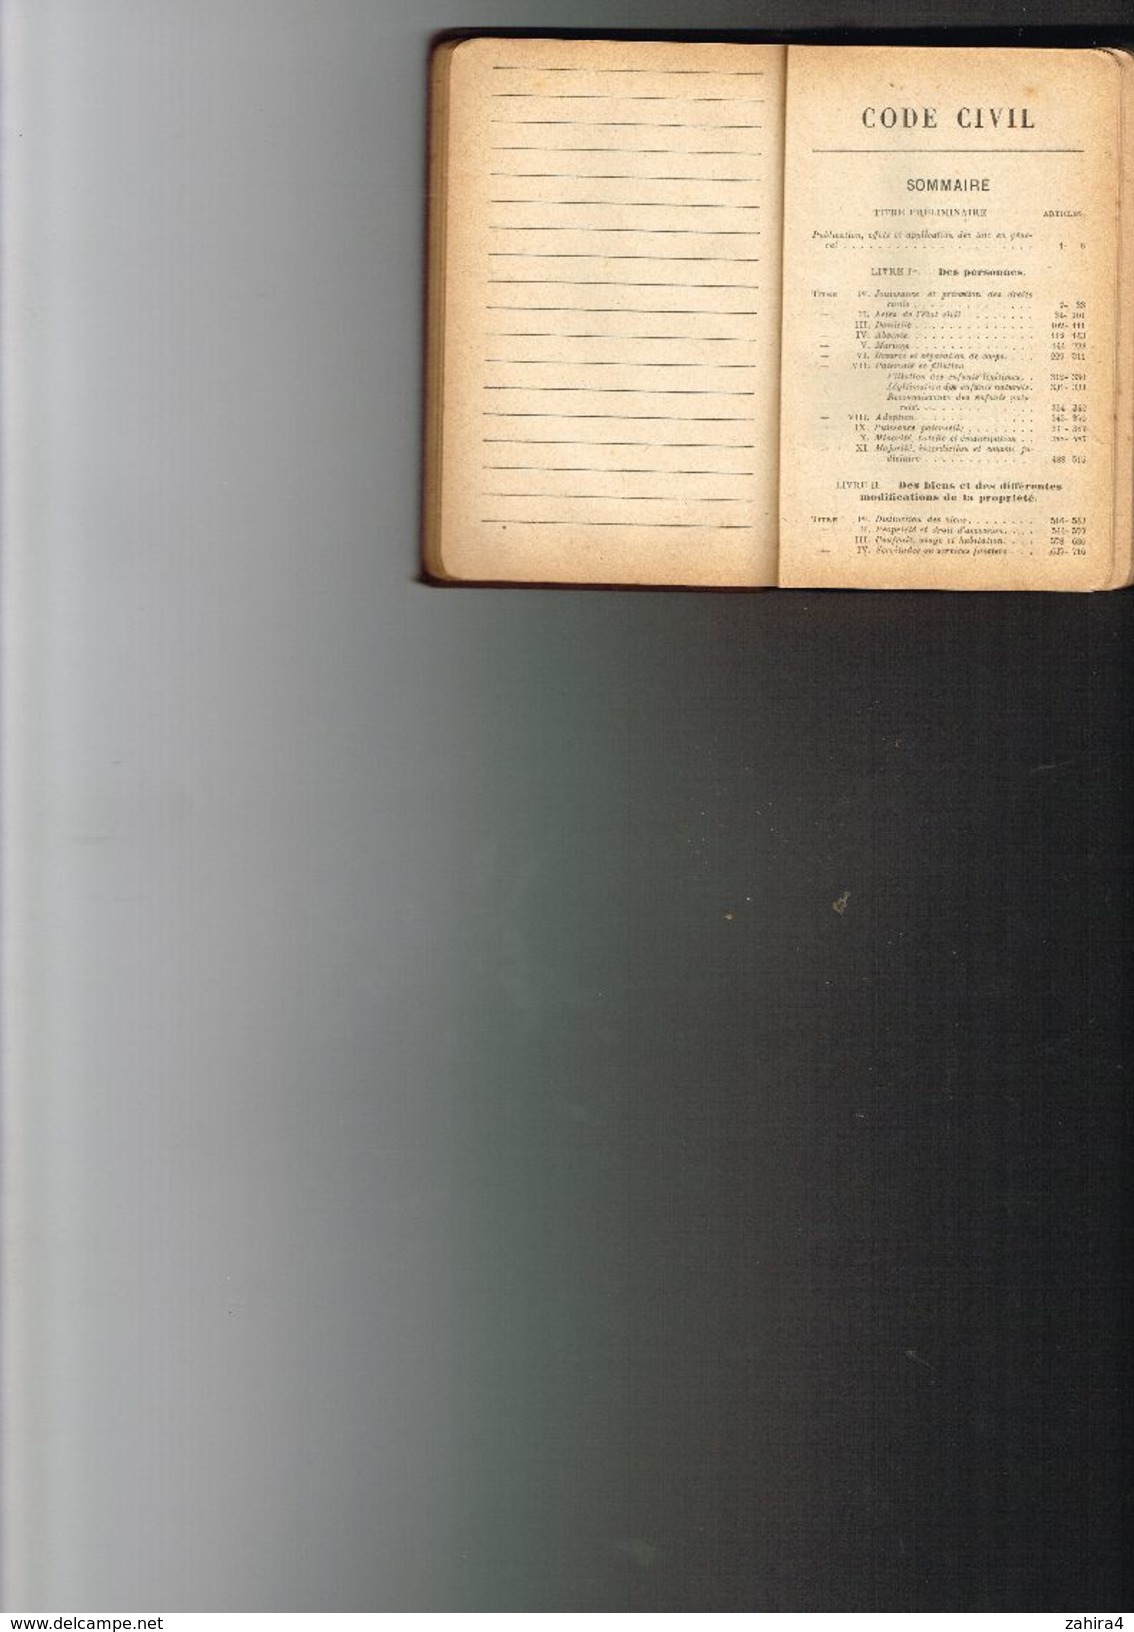 Agenda-Code 1928 Avec Formules & Renseignements Pratique Paris à L'administration Du Recueil Général Des Lois Et Décrets - Right